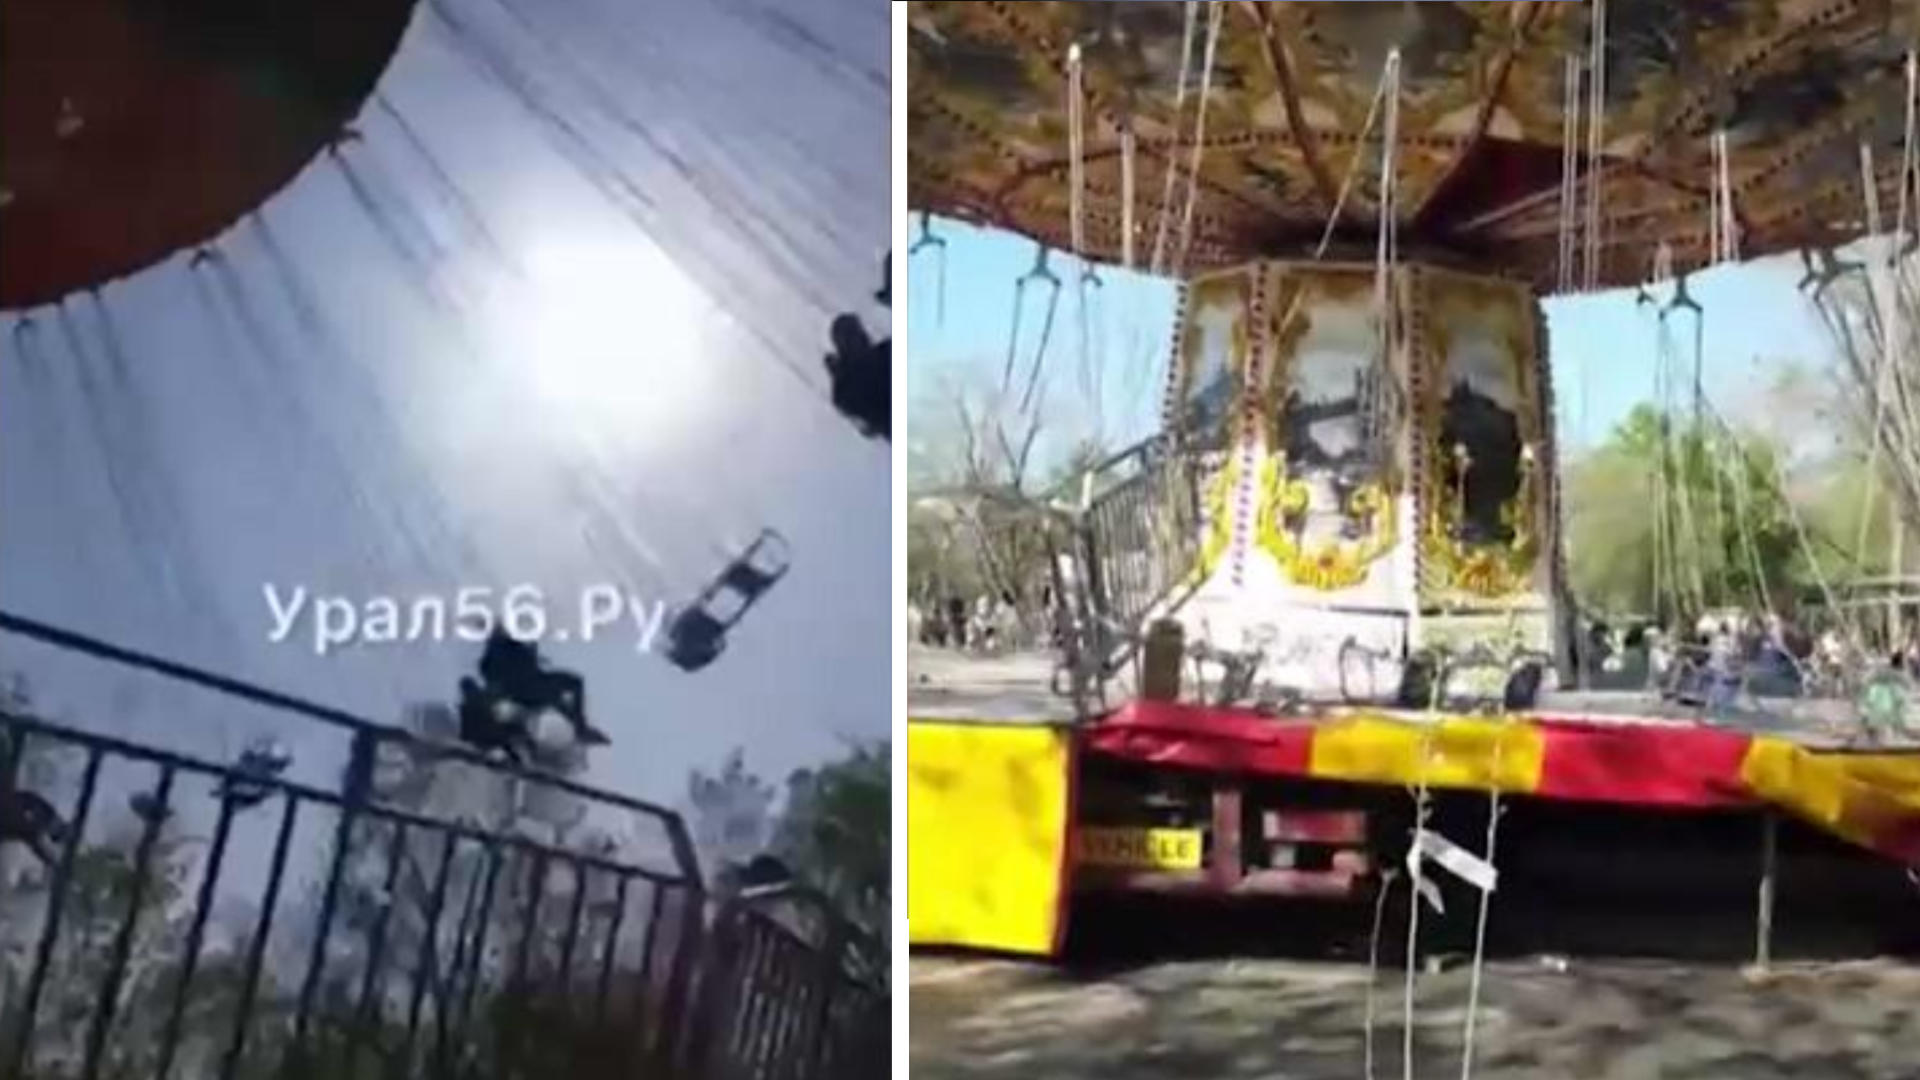 Lebensgefahr! Kinderkarussell kracht plötzlich ein Horrorunfall in russischem Freizeitpark